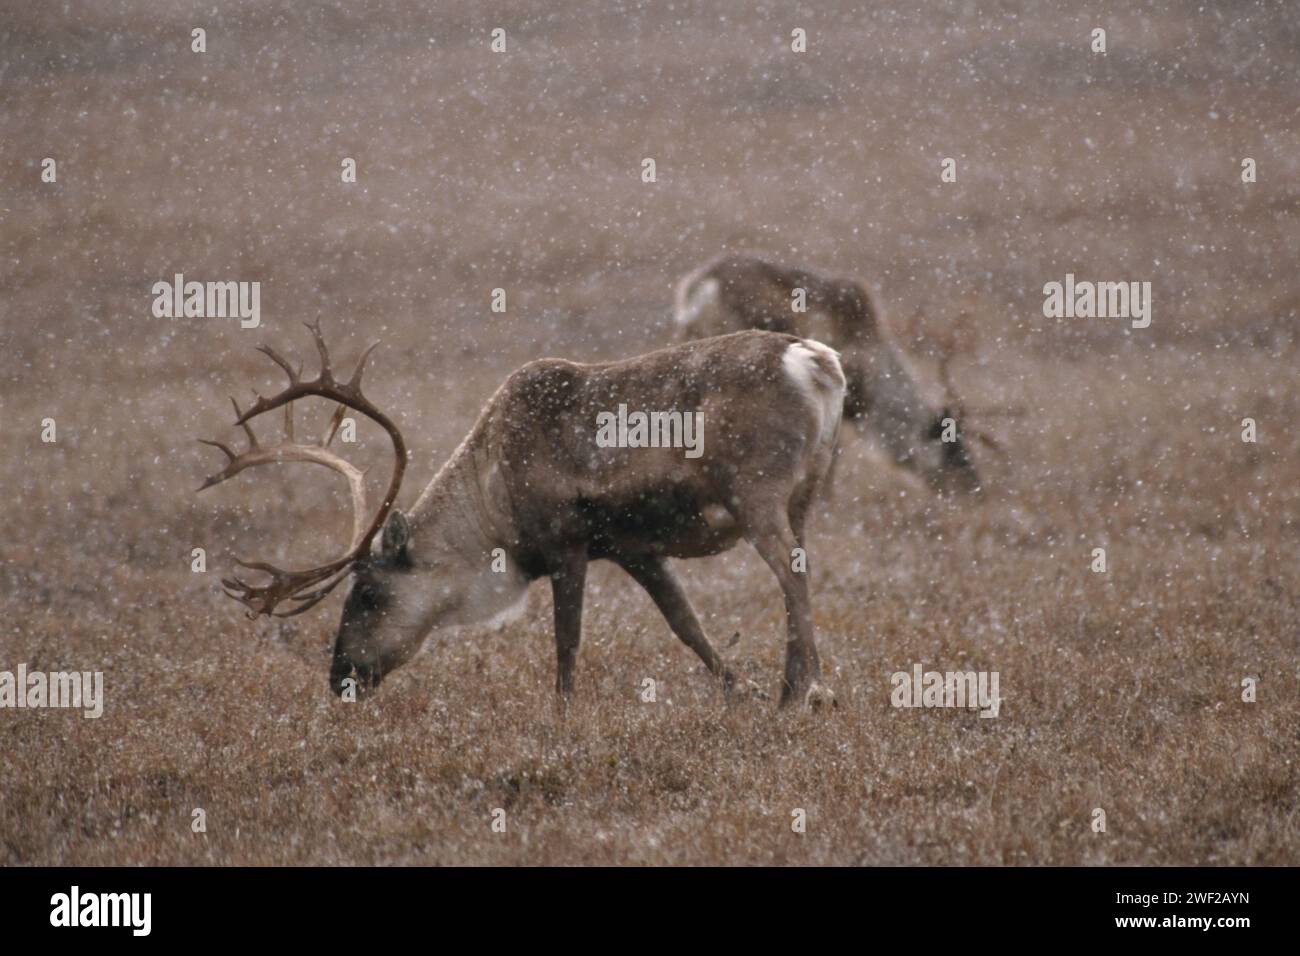 Caribou de la terre aride, Rangifer tarandus, se nourrissant lorsqu'il neige, 1002 plaine côtière du refuge faunique national de l'Arctique, Alaska Banque D'Images